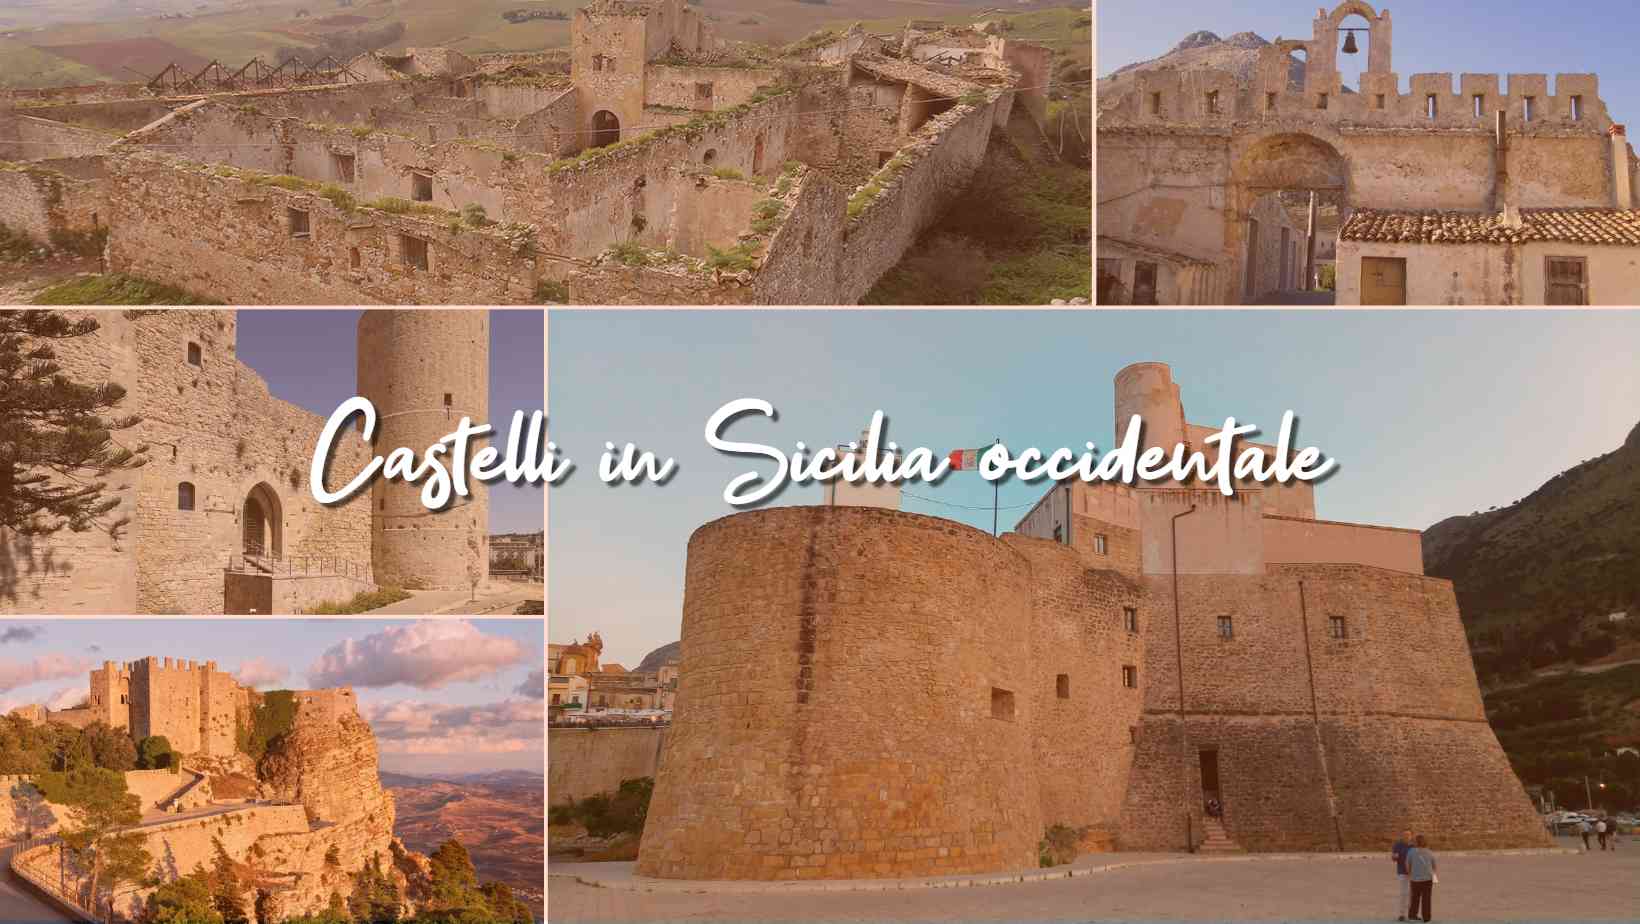 Castelli in Sicilia occidentale